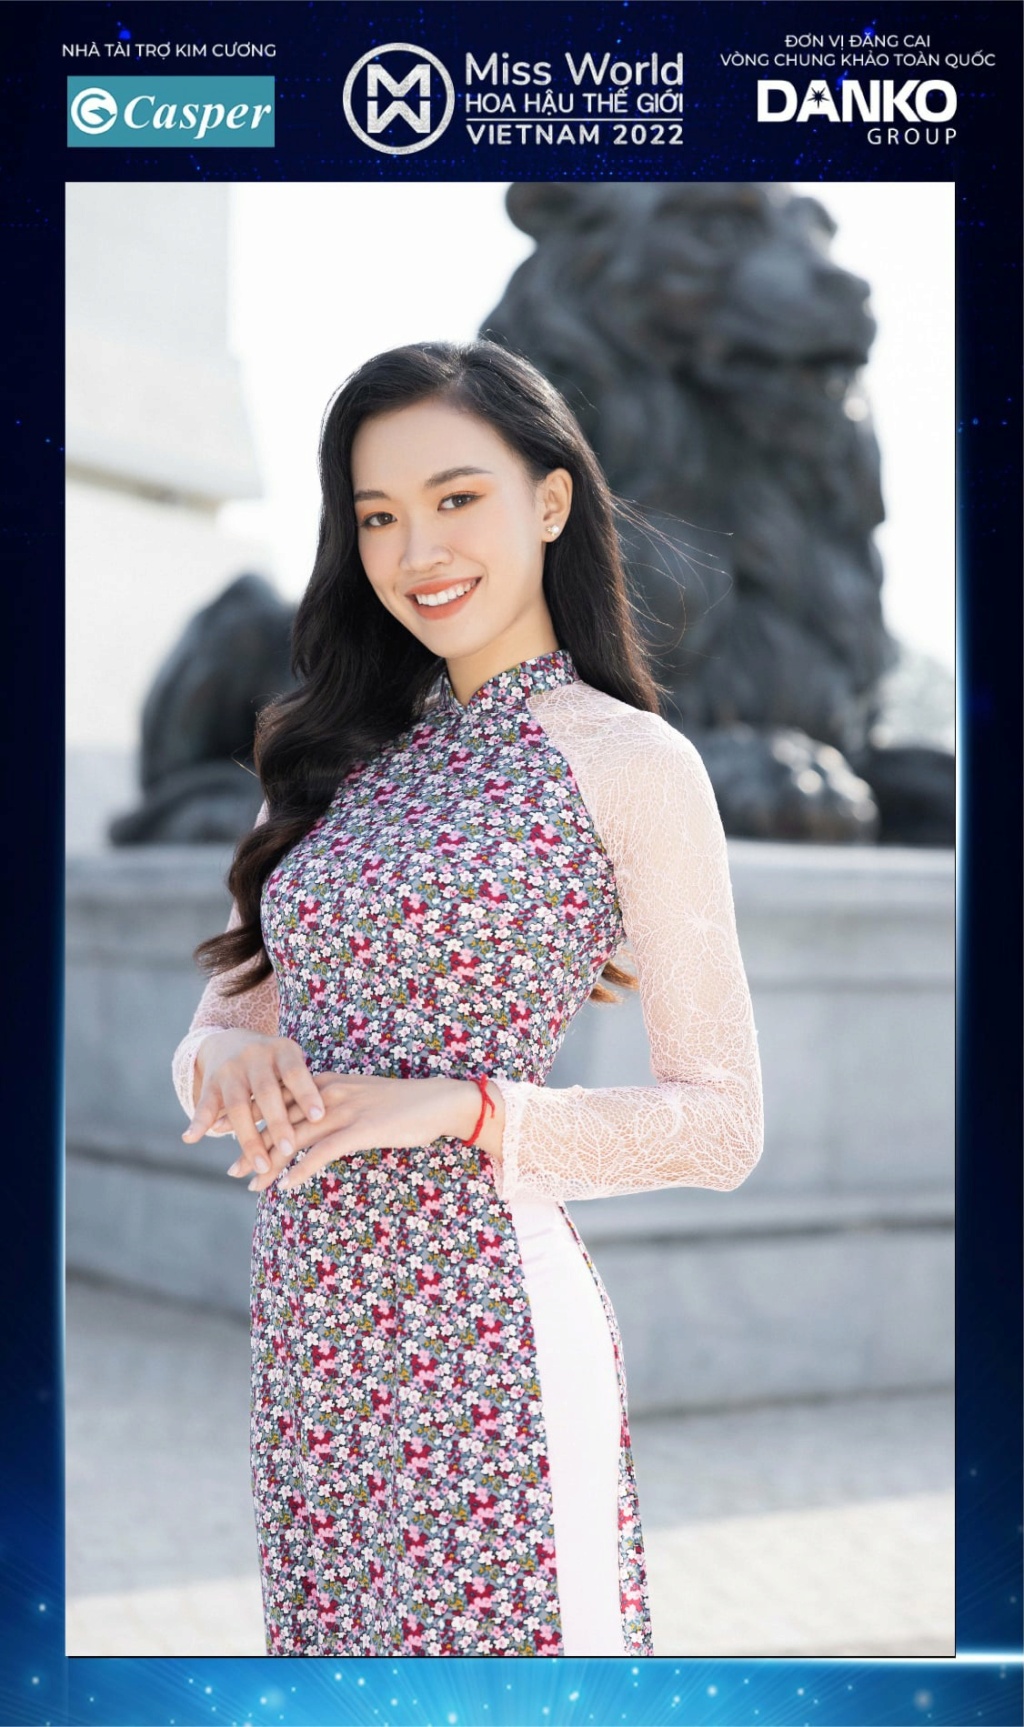 Miss World Vietnam 2022 27910610